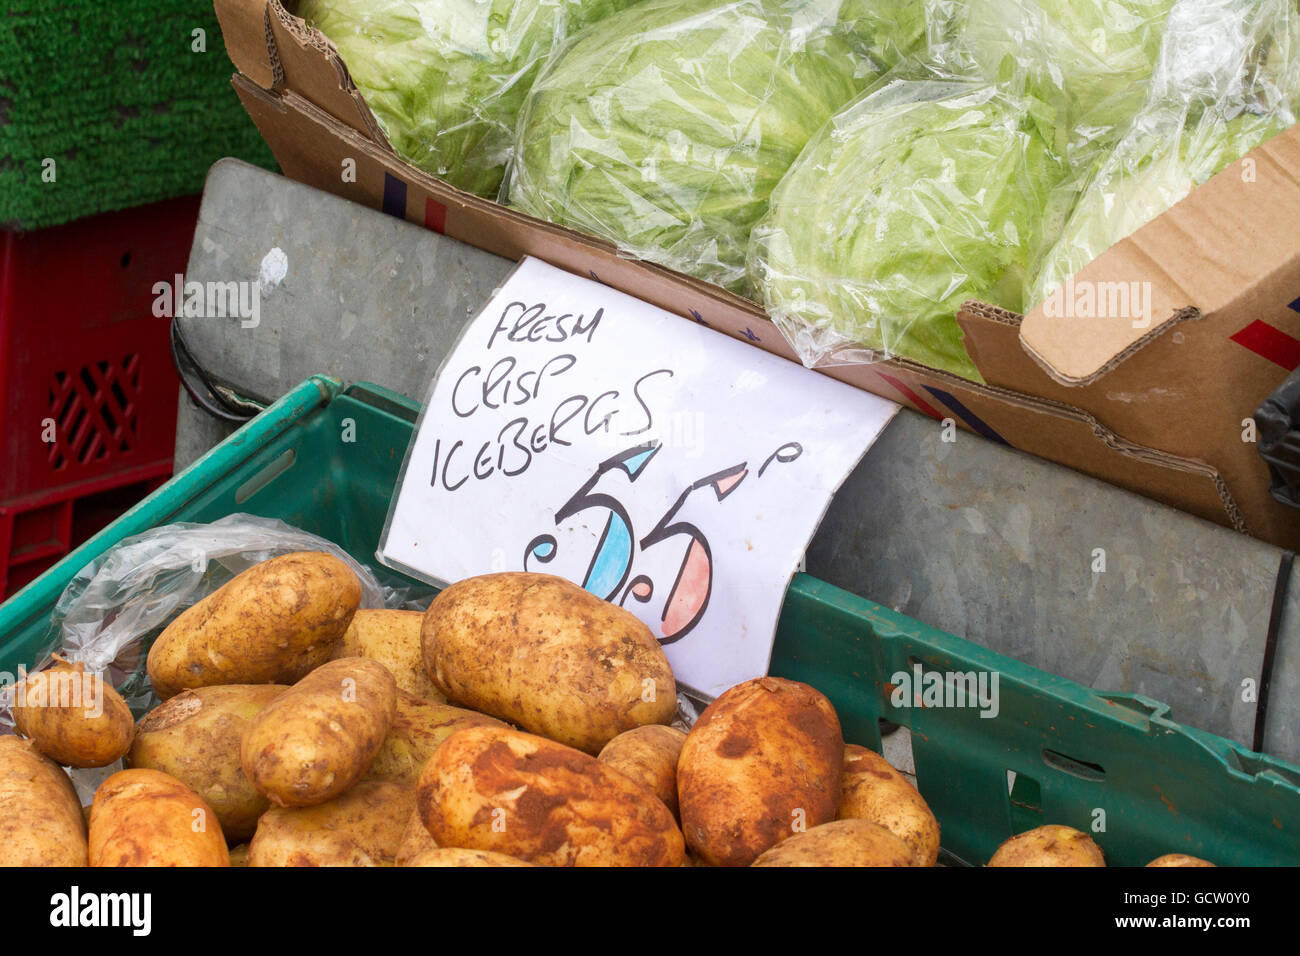 La laitue Iceberg fraîche crisp et pommes de terre au bord de la stalle, UK Banque D'Images